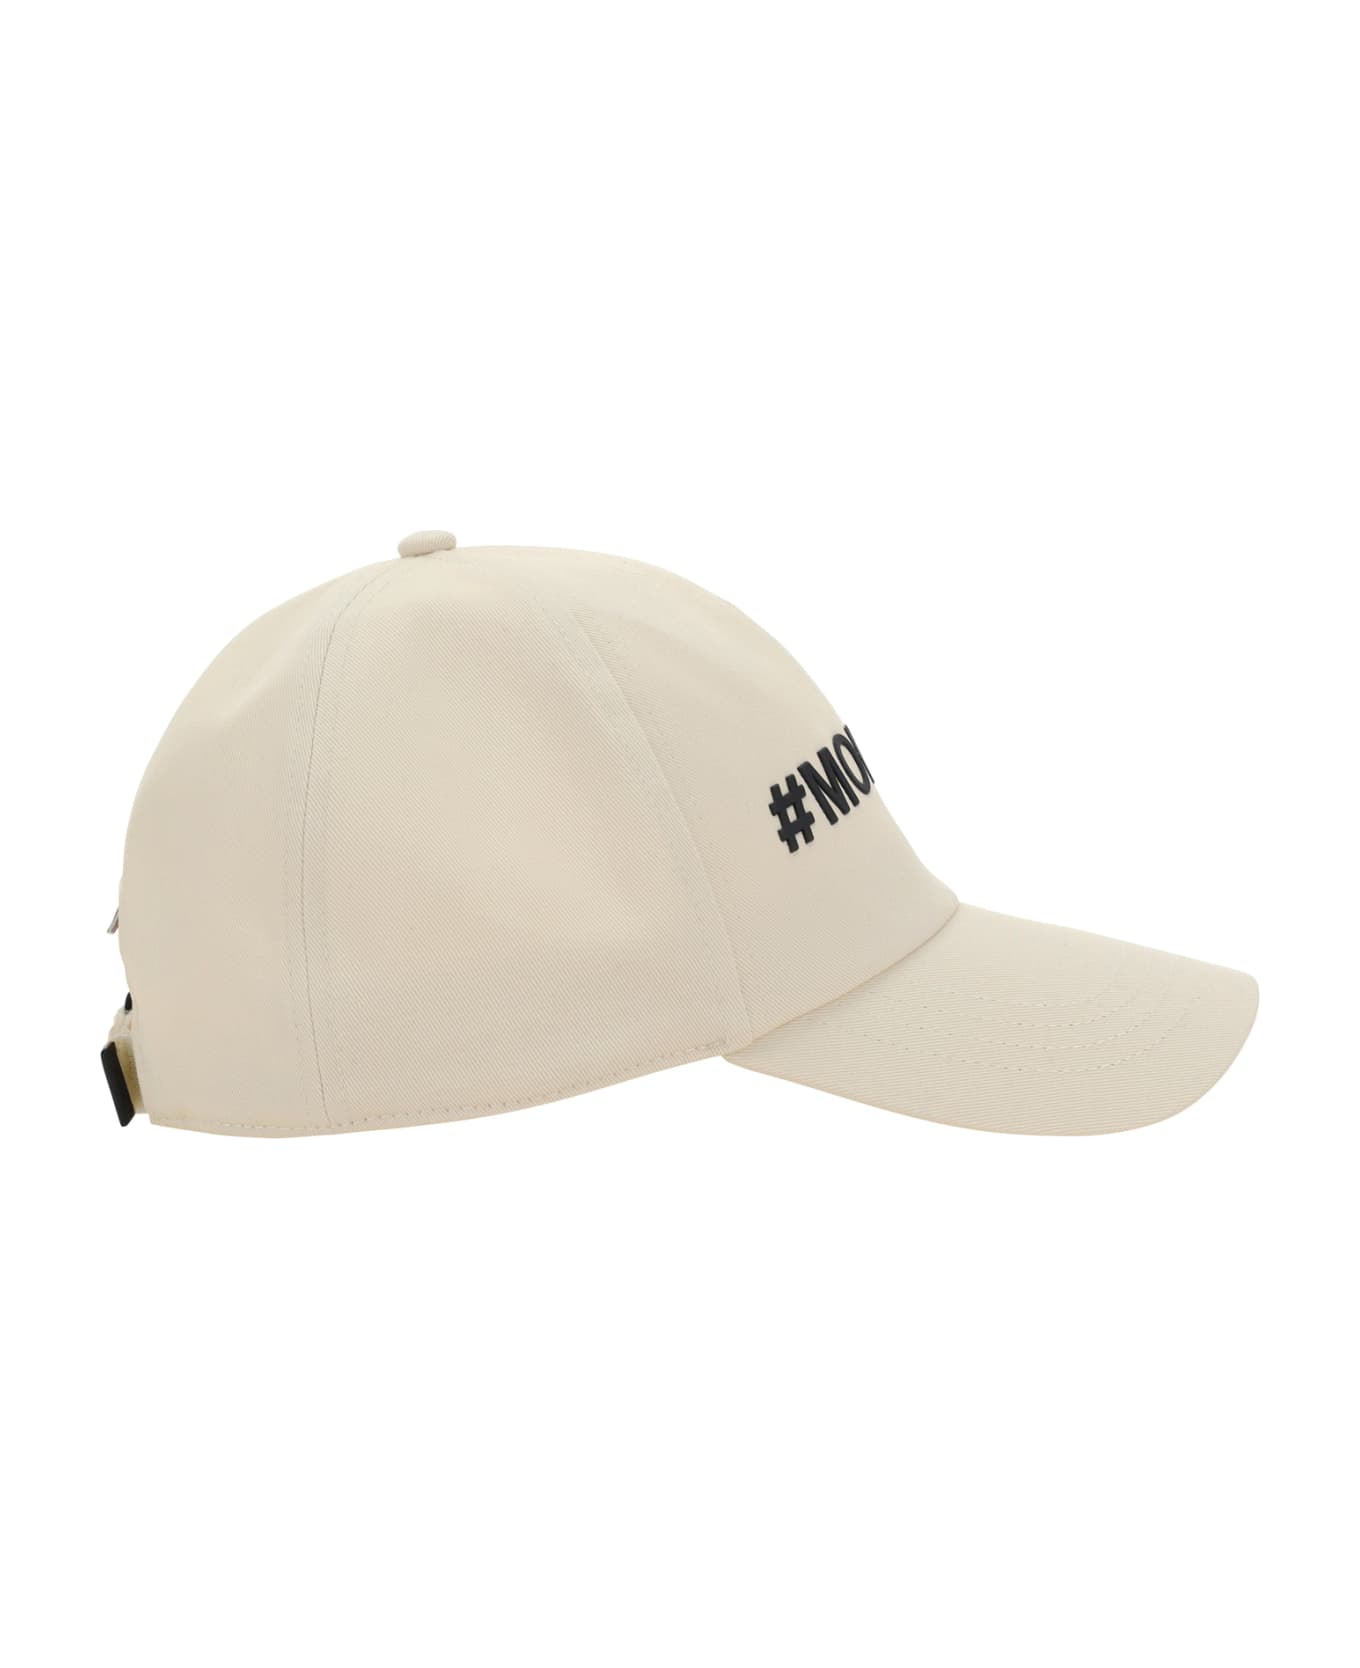 Moncler Grenoble Baseball Cap - WHITE 帽子